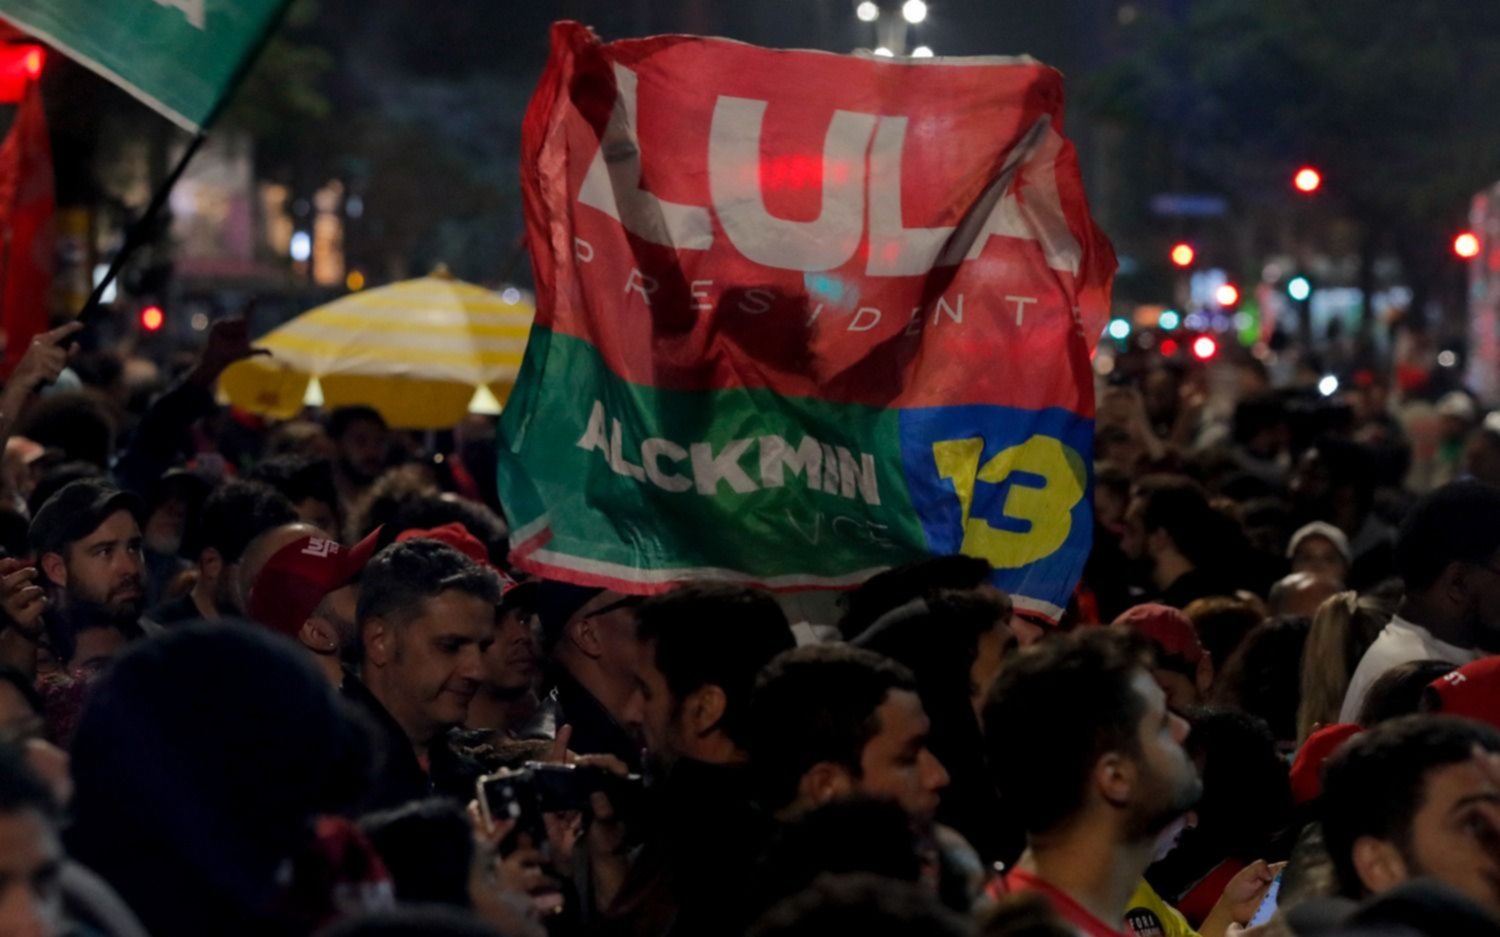 Elecciones en Brasil: Lula ganó pero no le alcanzó, Bolsonaro sorprendió y se definirá en segunda vuelta